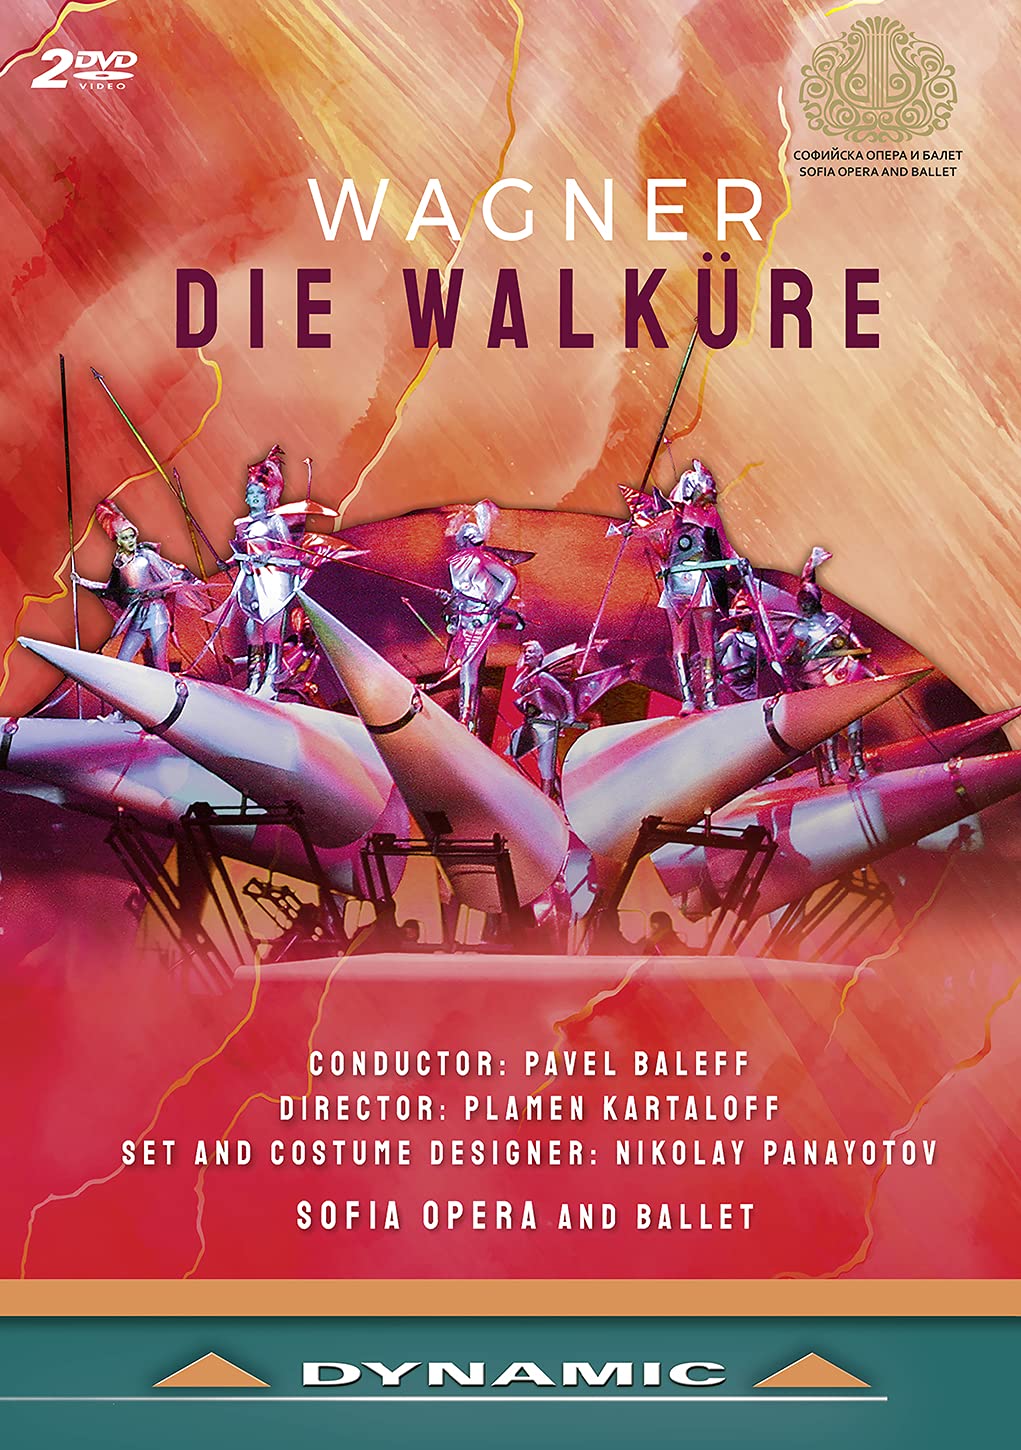 Music Dvd Richard Wagner - Die Walkure (2 Dvd) NUOVO SIGILLATO, EDIZIONE DEL 17/05/2021 SUBITO DISPONIBILE